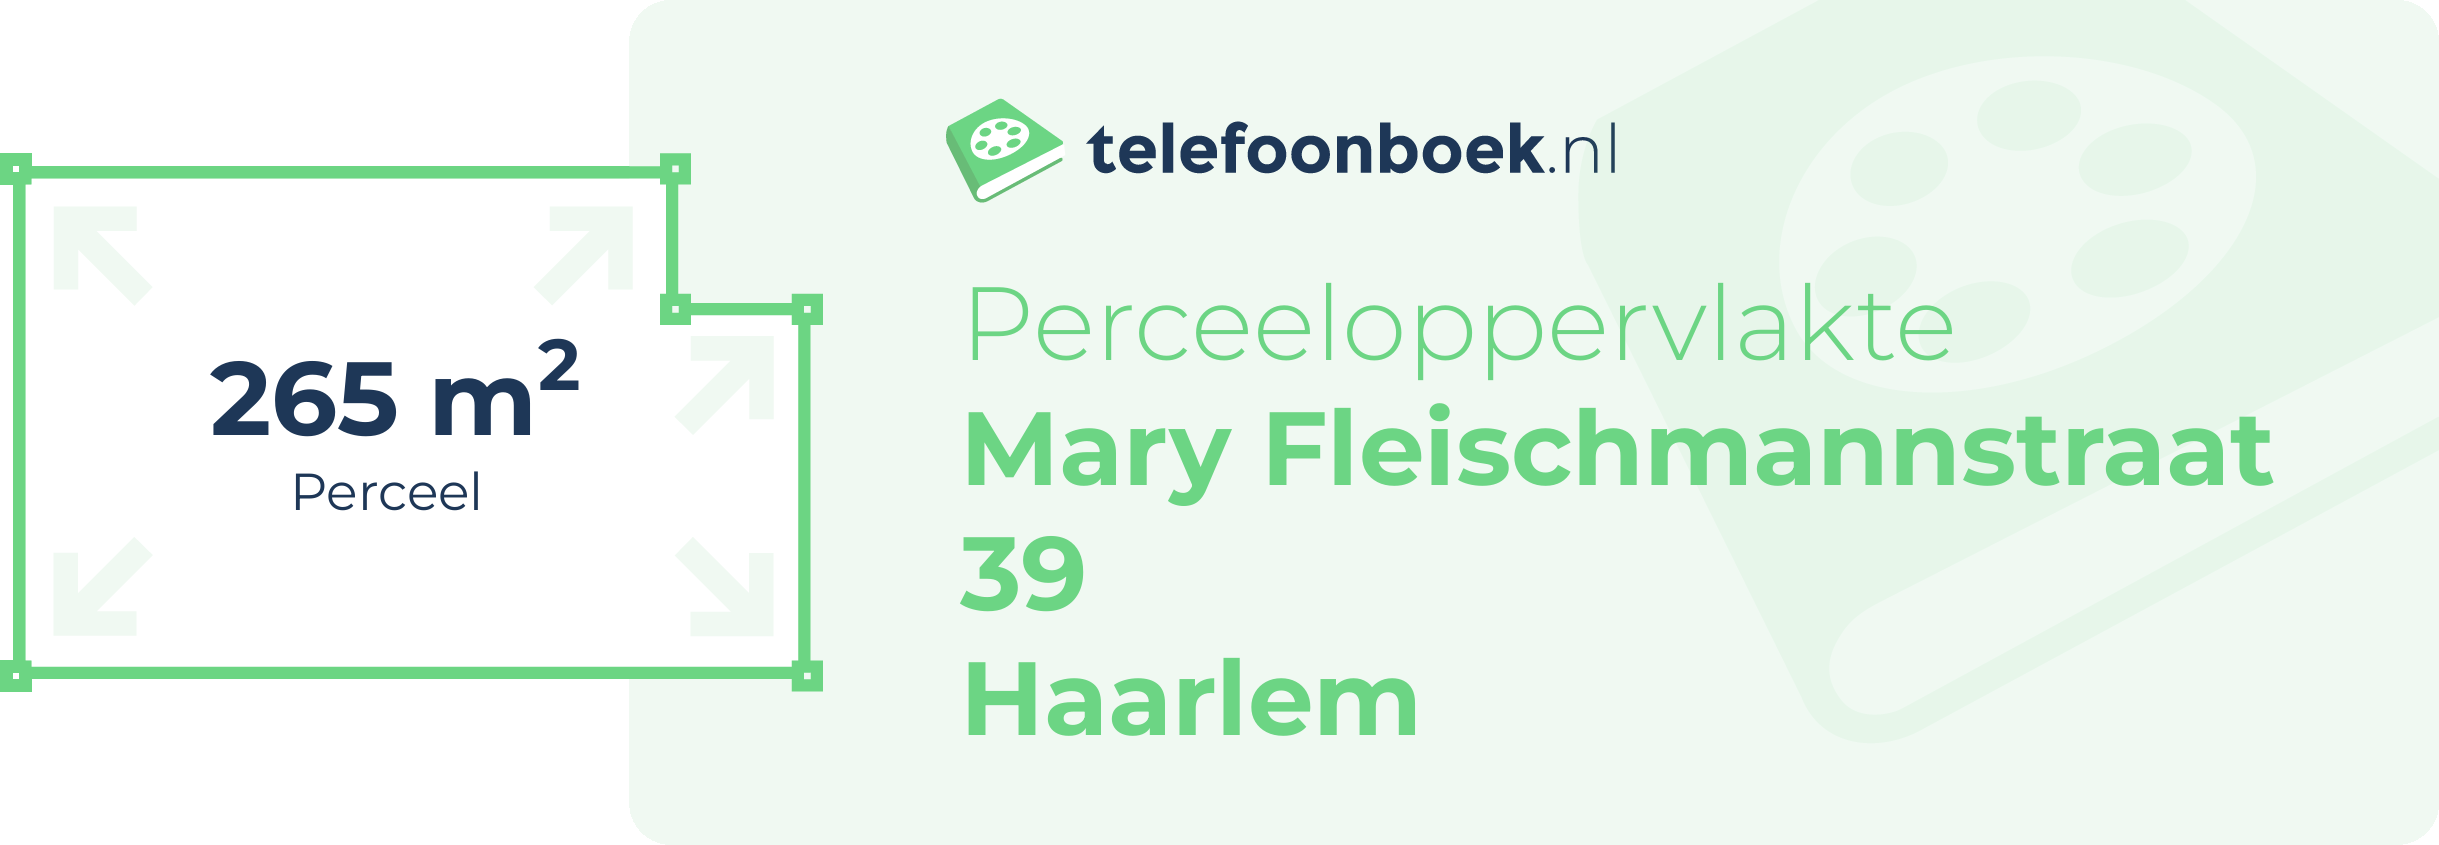 Perceeloppervlakte Mary Fleischmannstraat 39 Haarlem